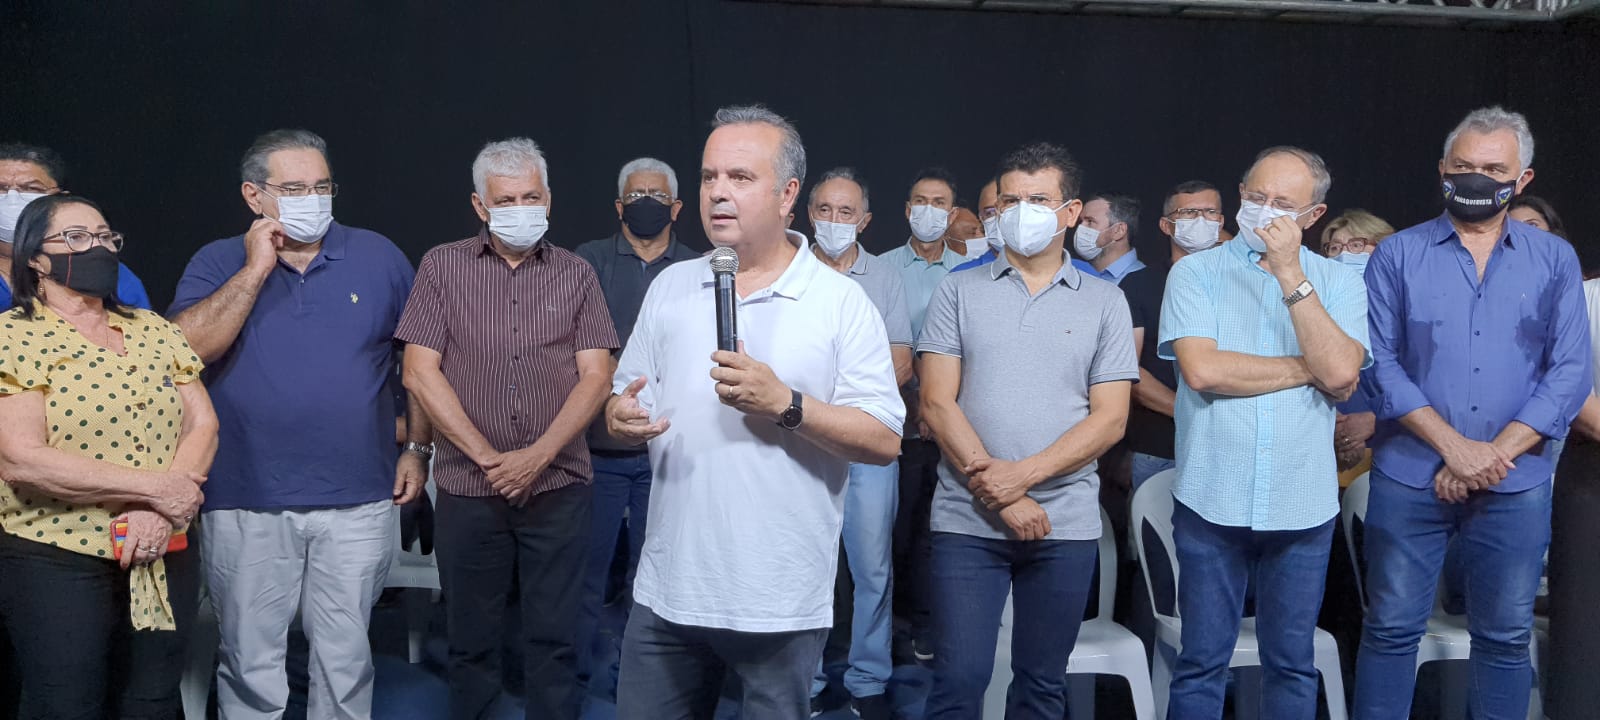 FOTOS e VÍDEO: Rogério Marinho lança pré-candidatura ao Senado com apoio de centenas de lideranças